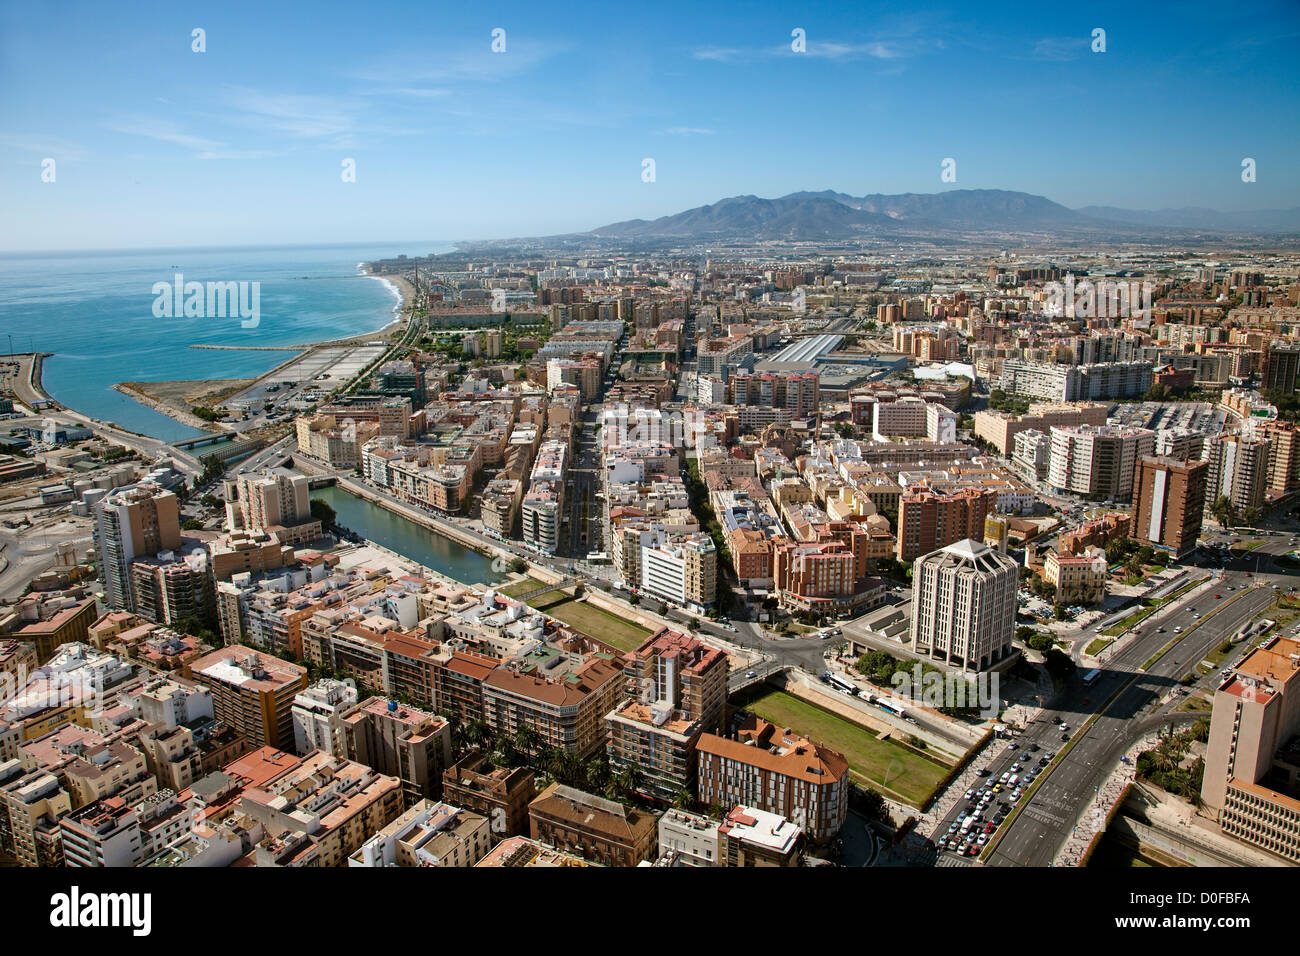 Aerial view of Malaga Costa del Sol Andalusia Spain Vista aerea de Málaga Costa del Sol Andalucía España Stock Photo